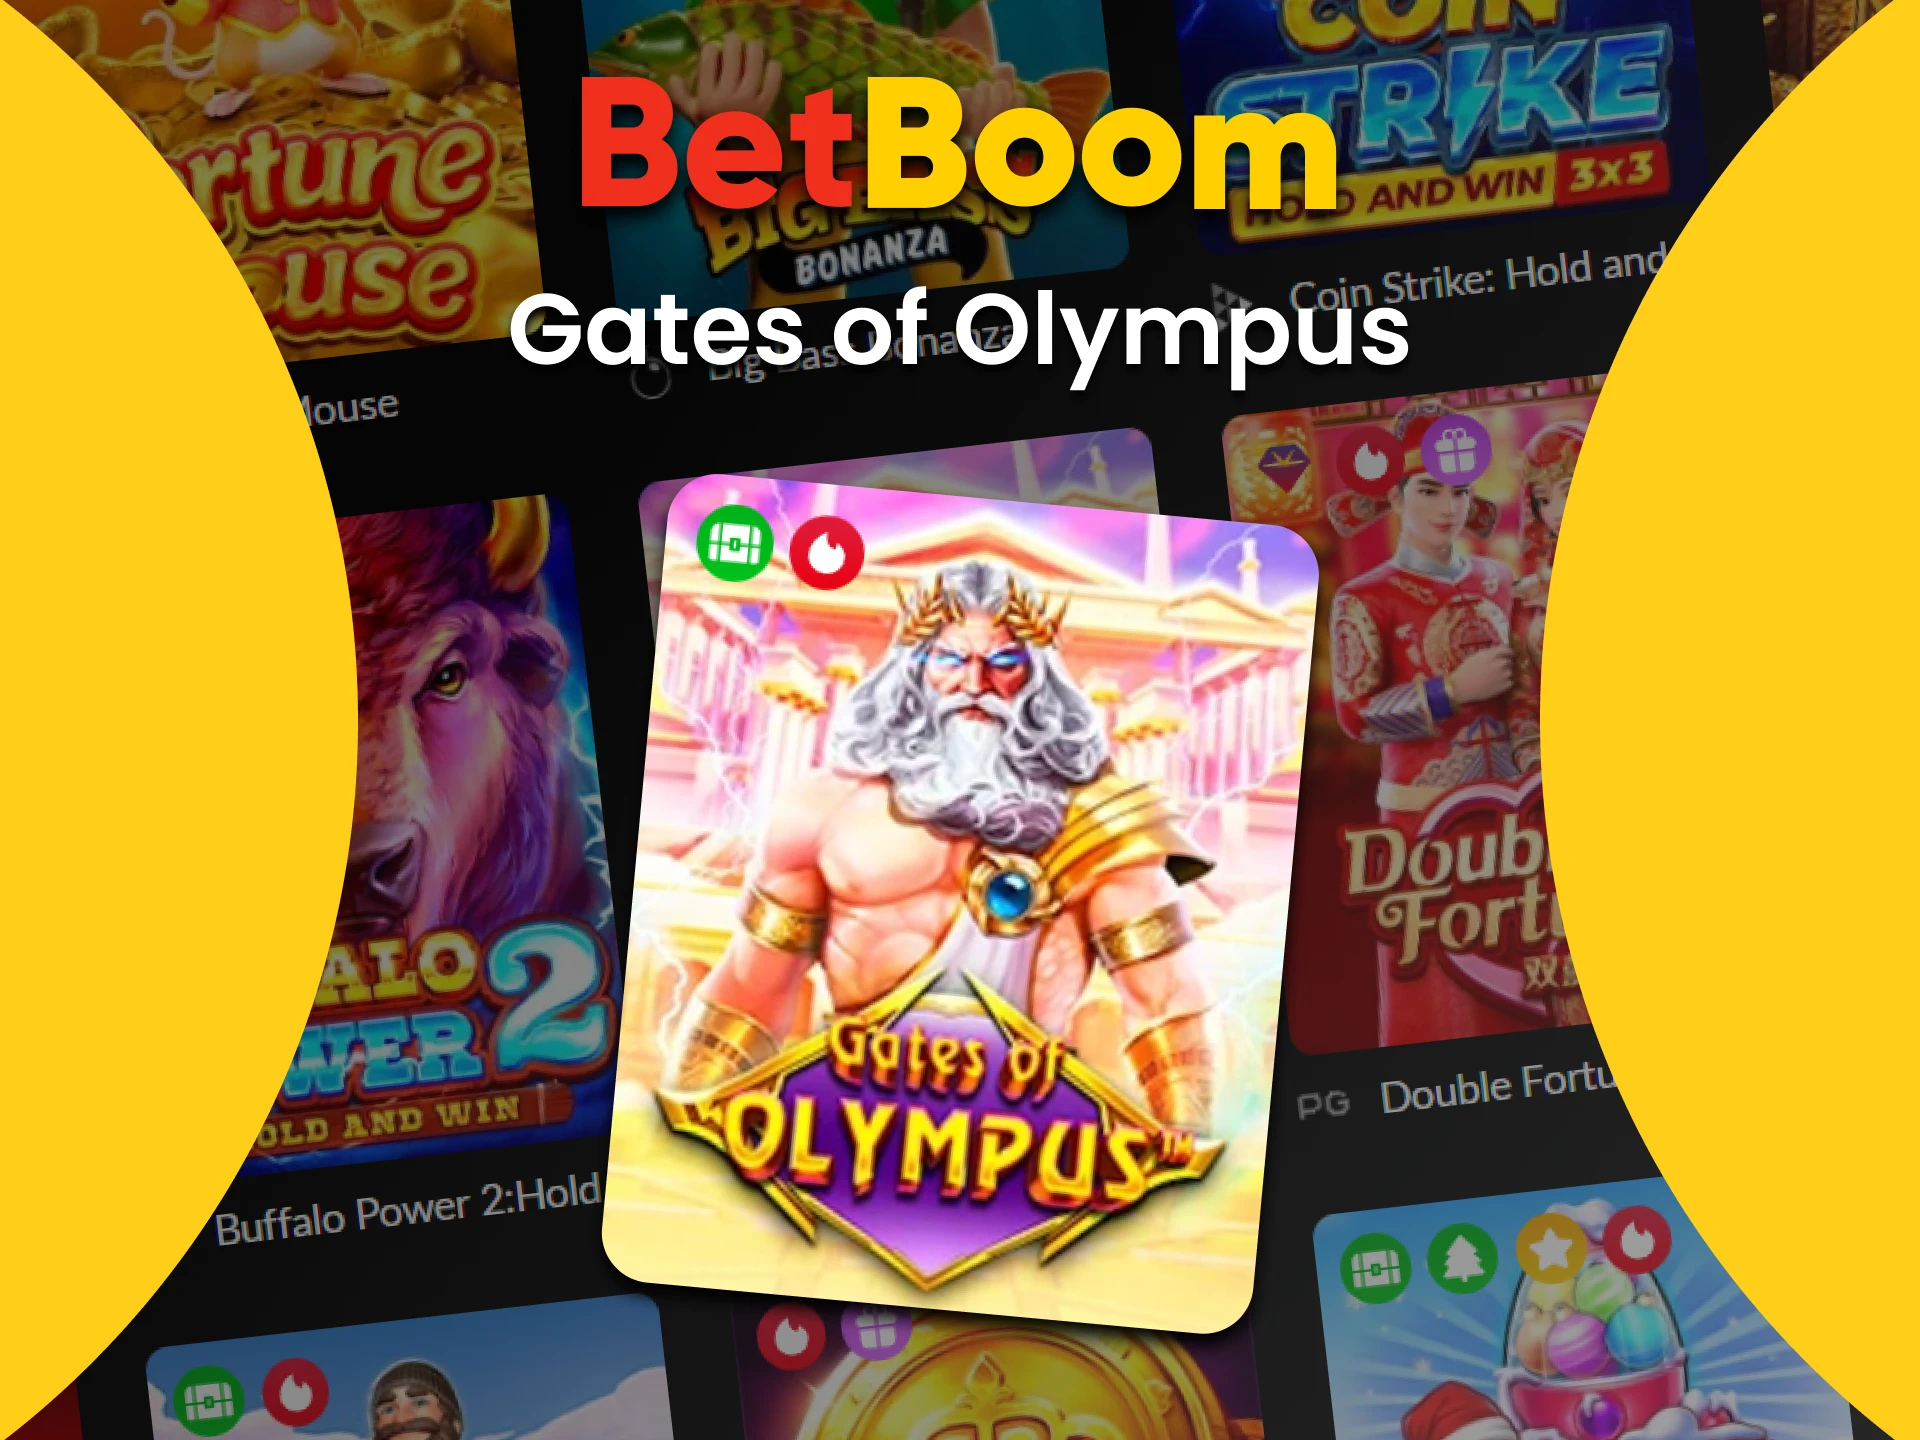 Para jogos de slots no BetBoom, escolha Gates of Olympas.